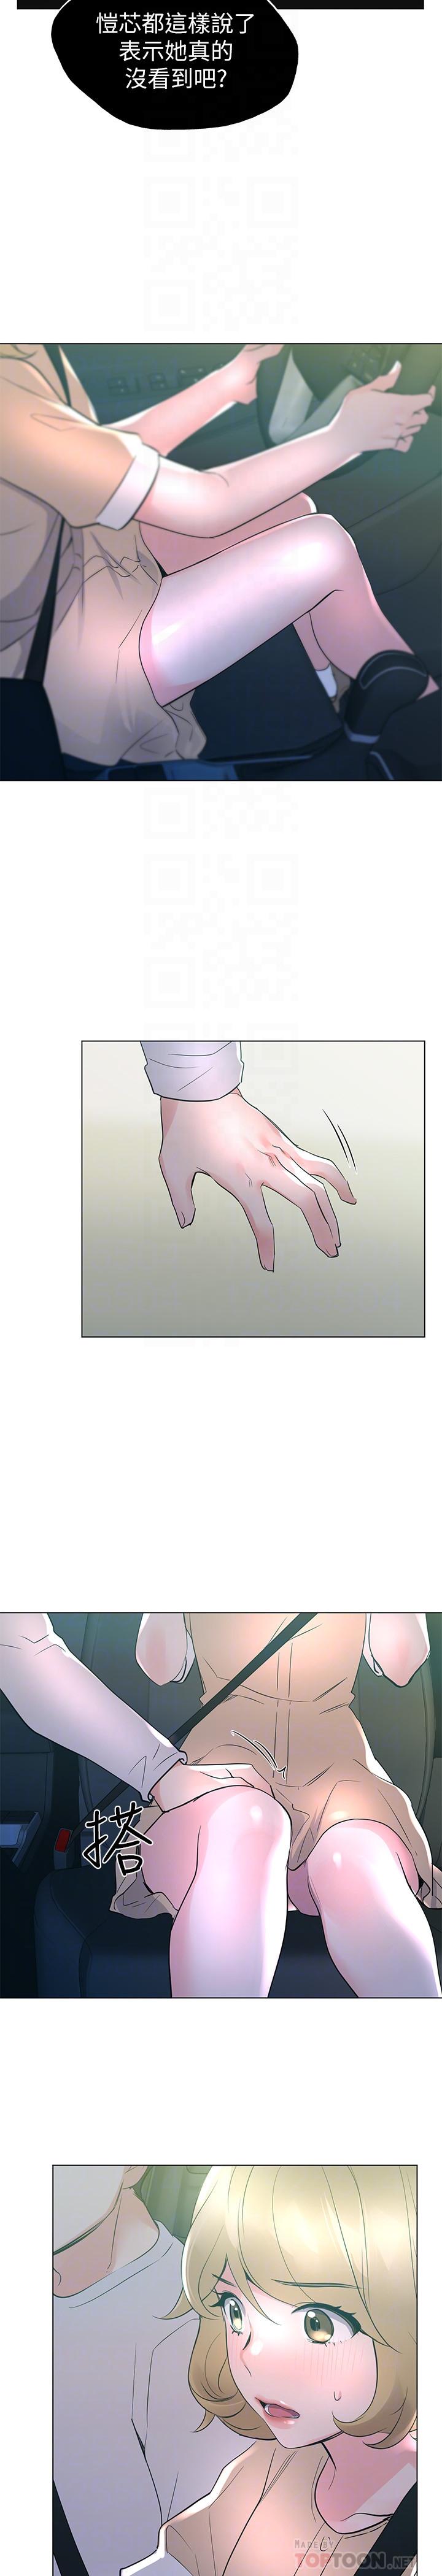 《重考生》漫画 第75话 - 跟恺芯的惊险车震